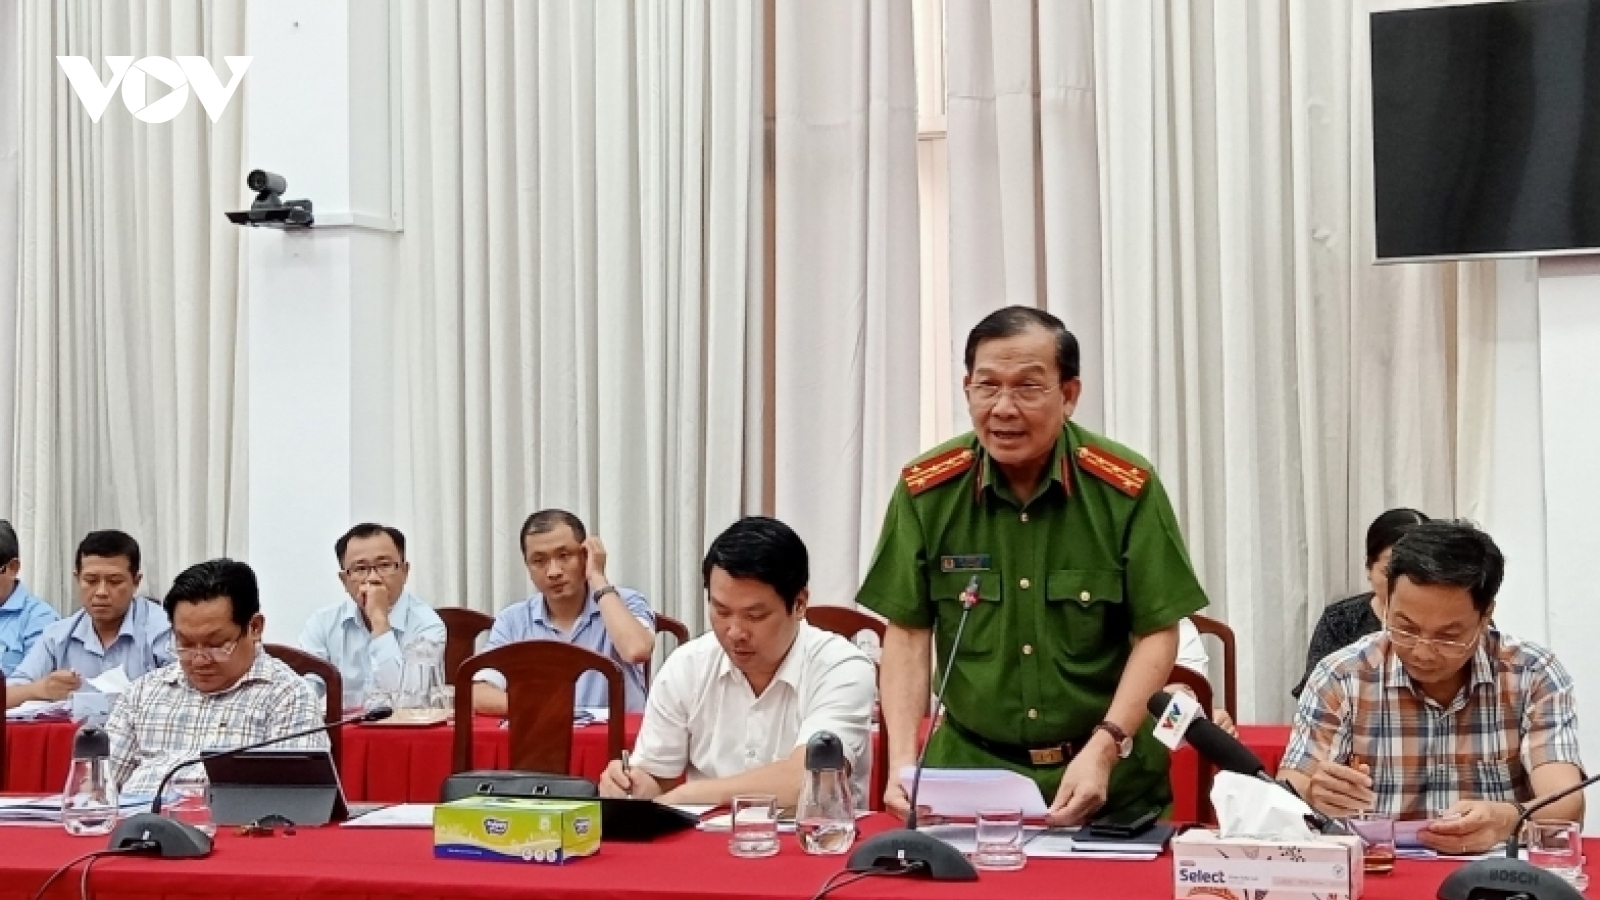 Nguyên Đội trưởng Đội quản giáo Trại tạm giam Long Tuyền bị khởi tố